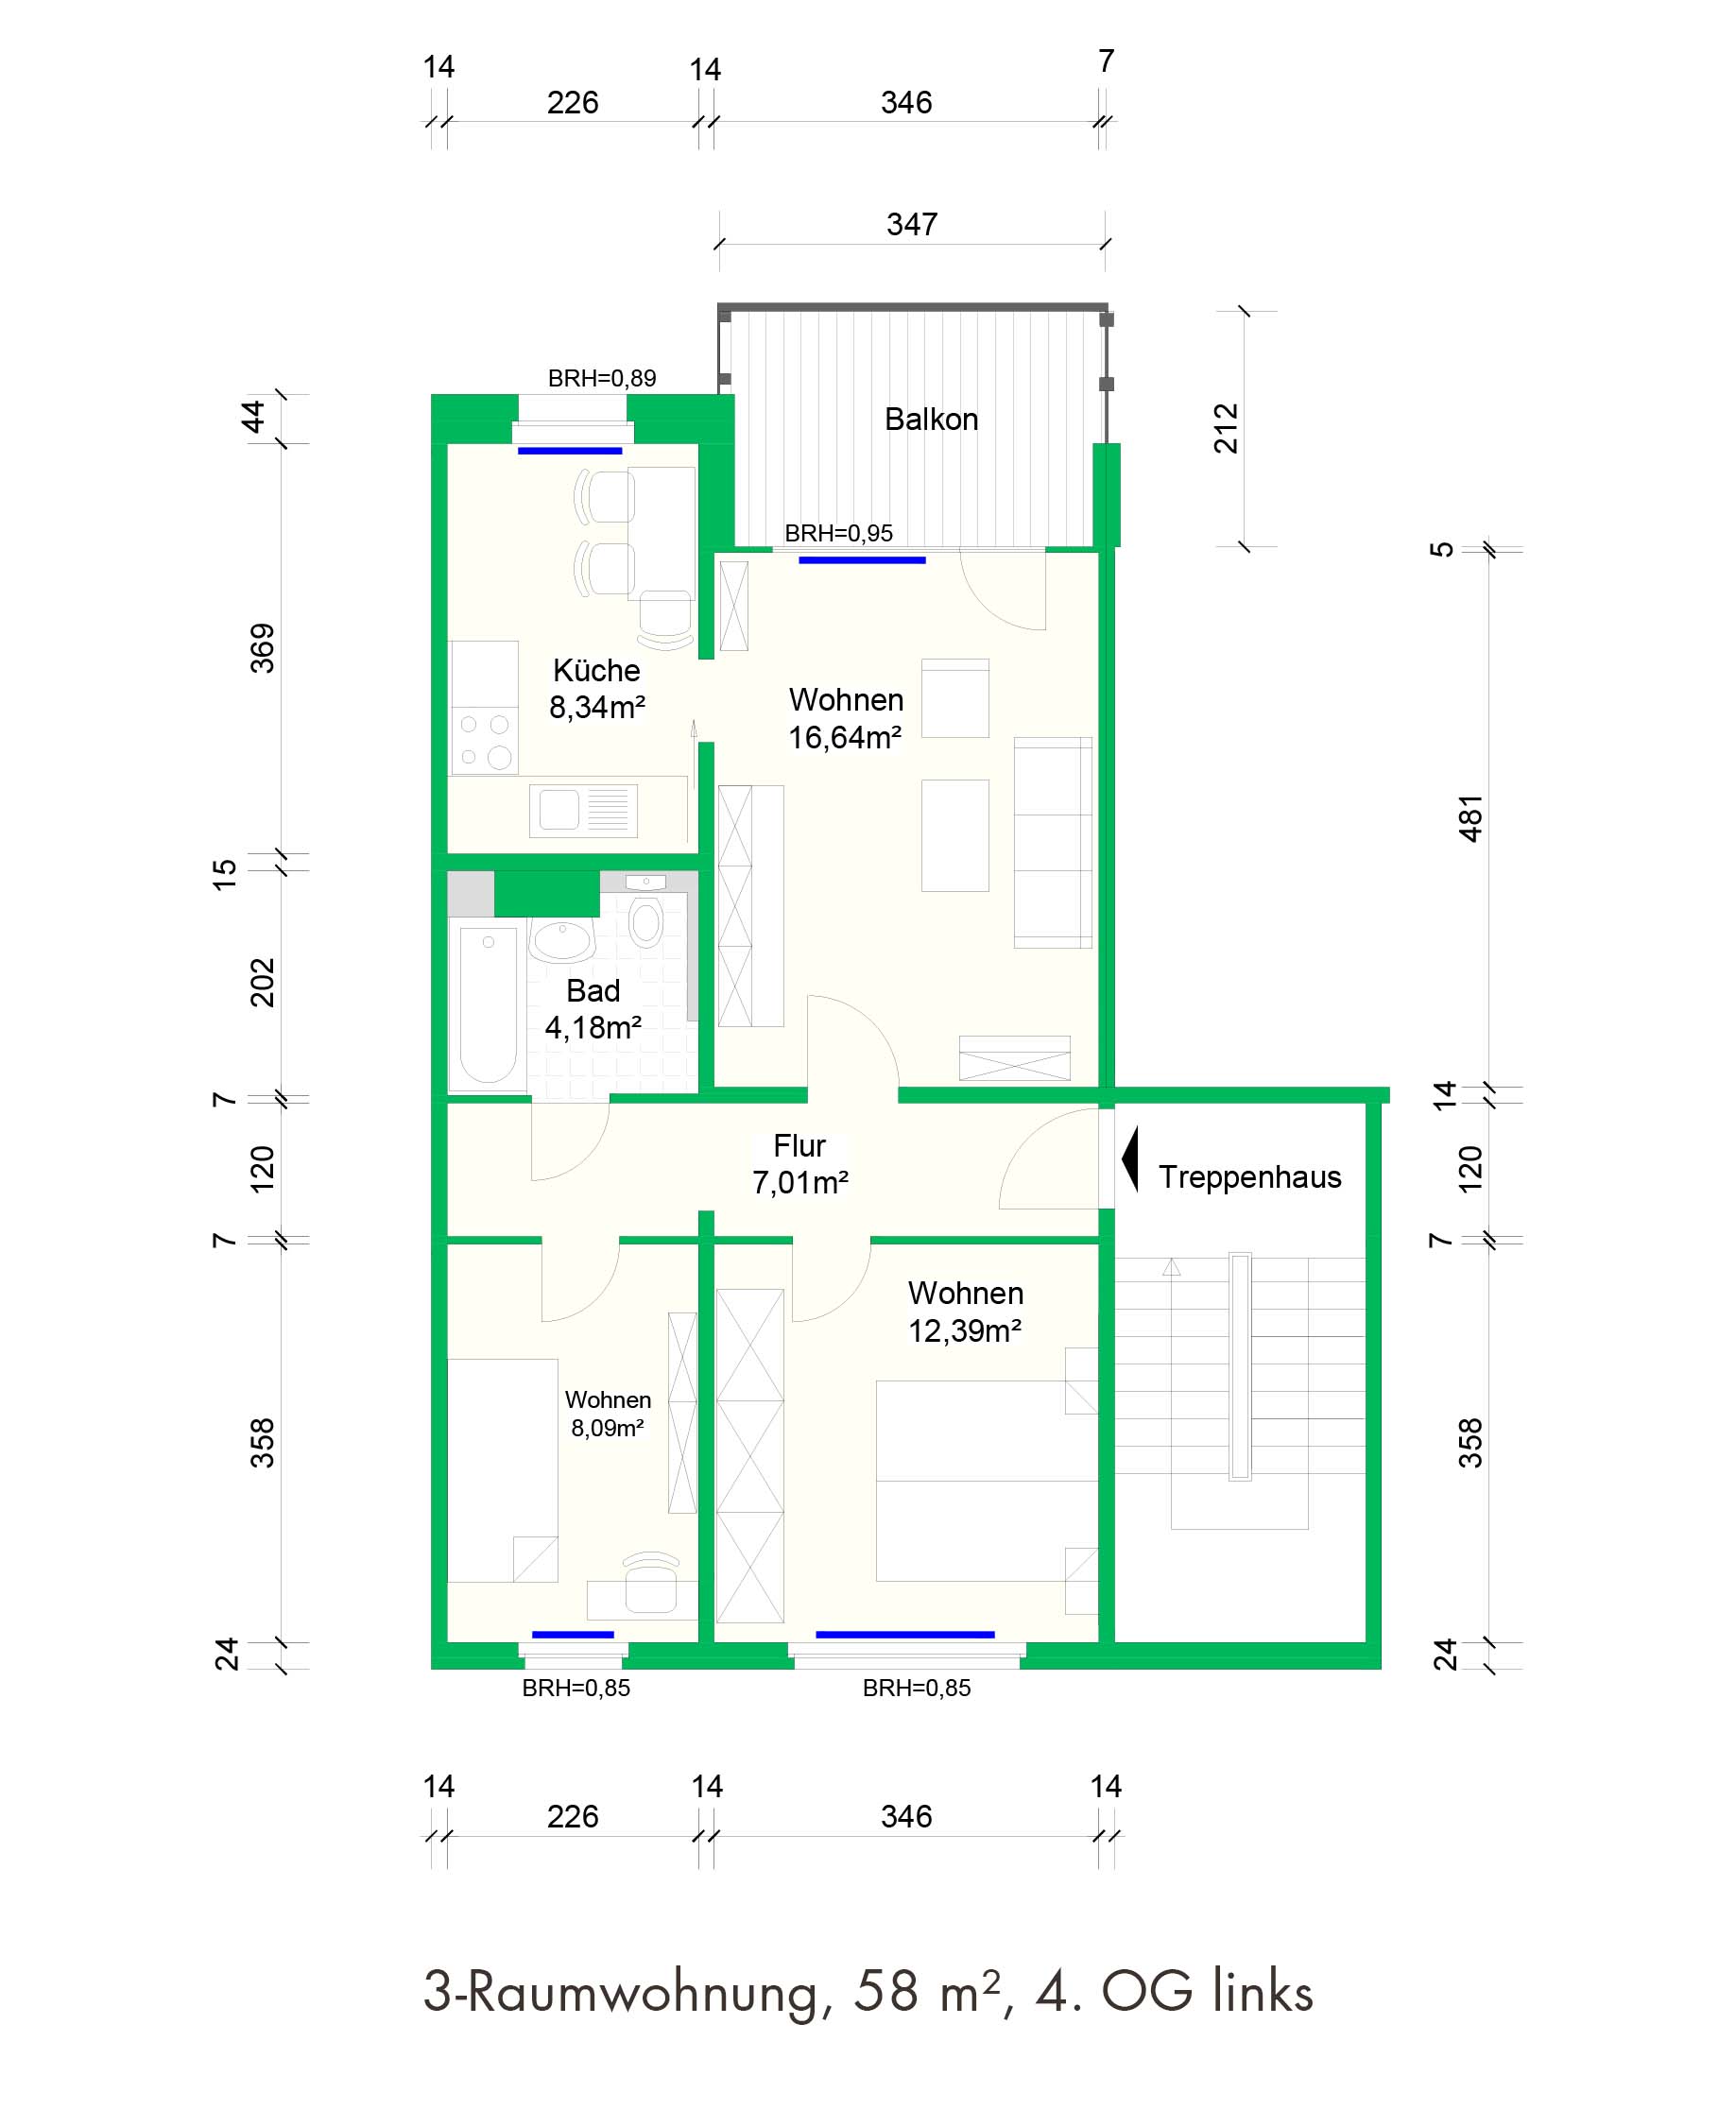 3-Raumwohnung, 58 m², 4. OG links